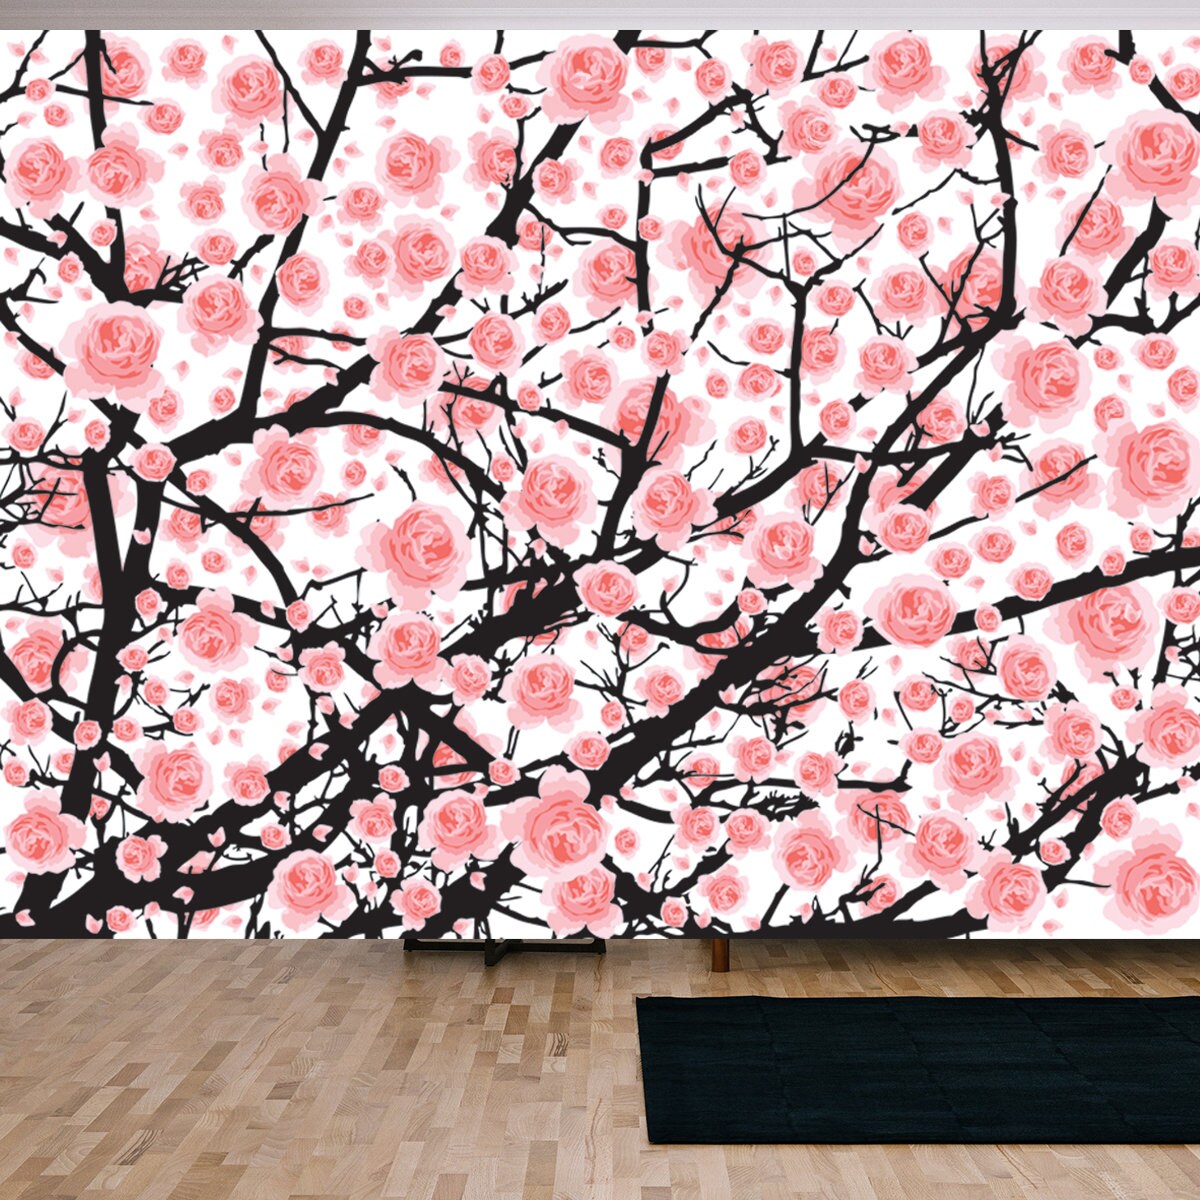 Full Bloom Pink Sakura Tree (Cherry Blossom) Black Wood Isolated on White, Flower Branch Backdrop Wallpaper Living Room Mural